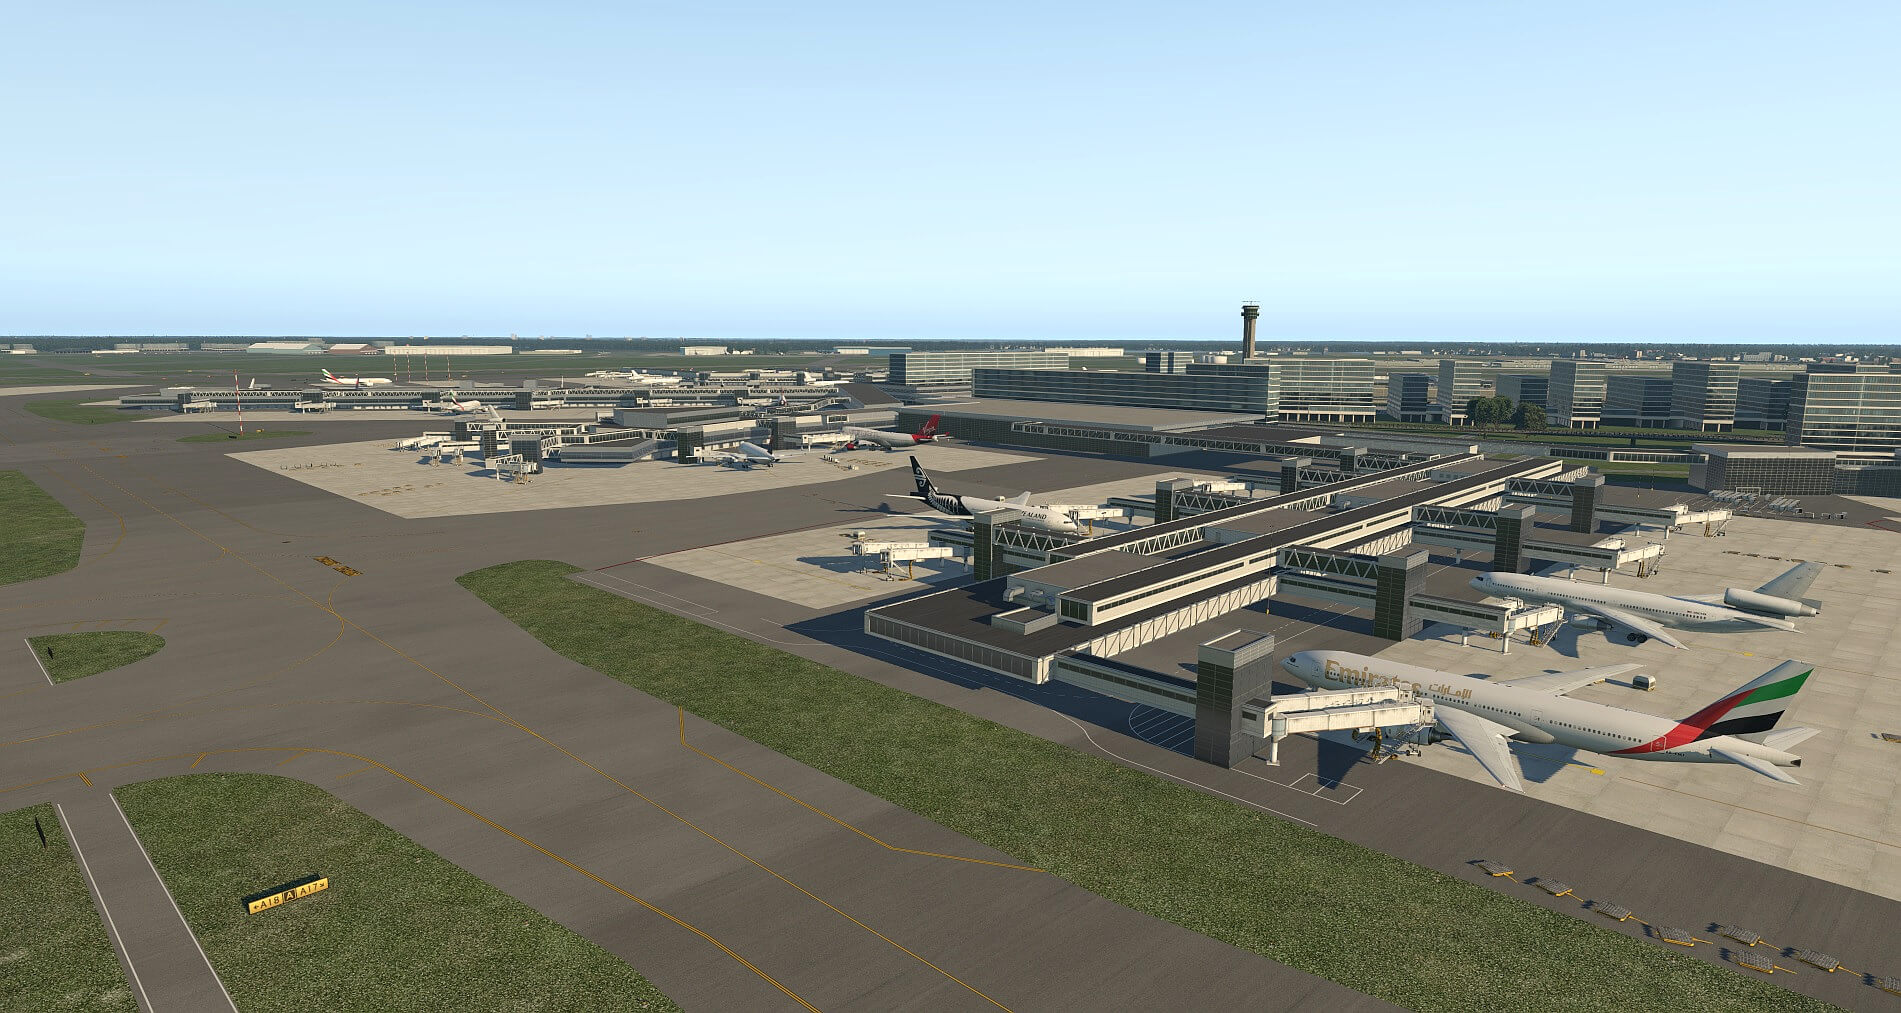 Login to roblox airport simulator